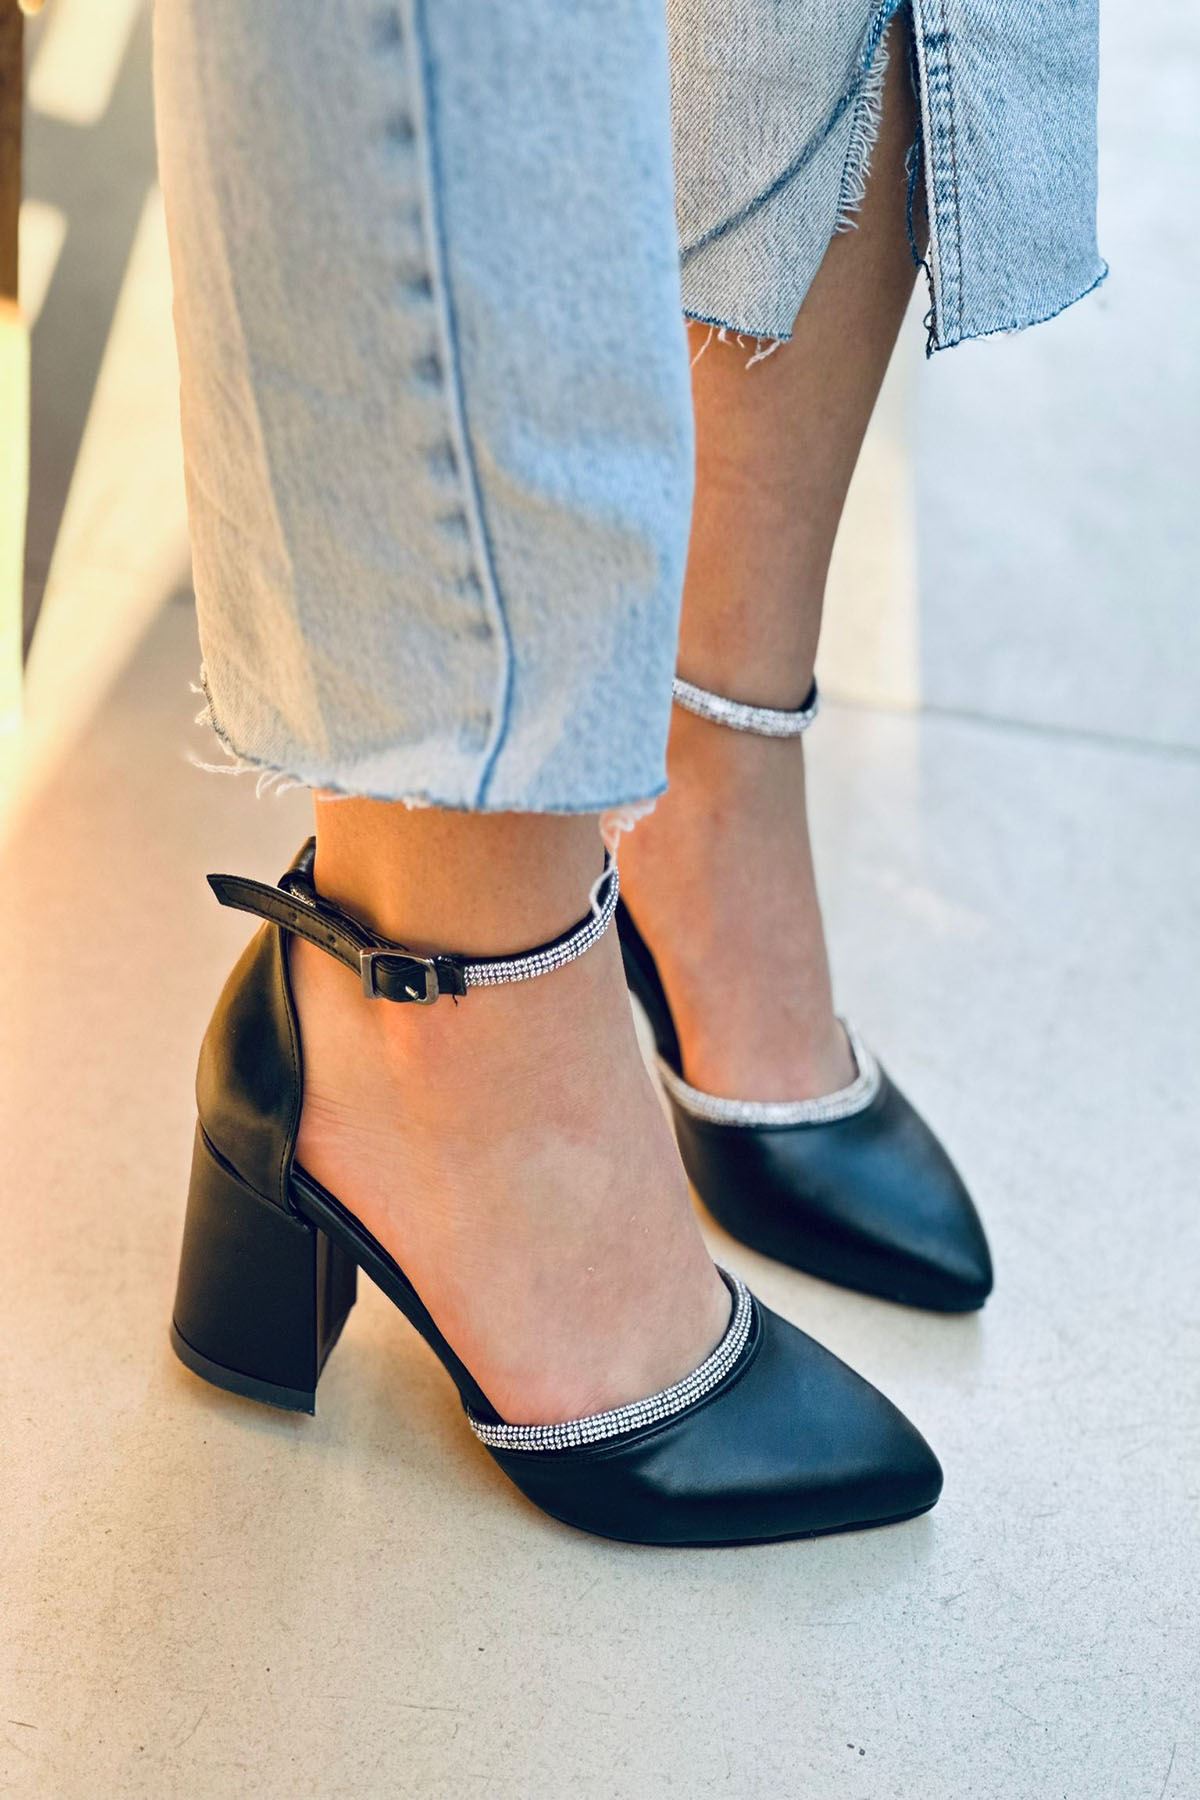 Mida Shoes Y148 Siyah Deri Taşlı Kadın Topuklu Ayakkabı